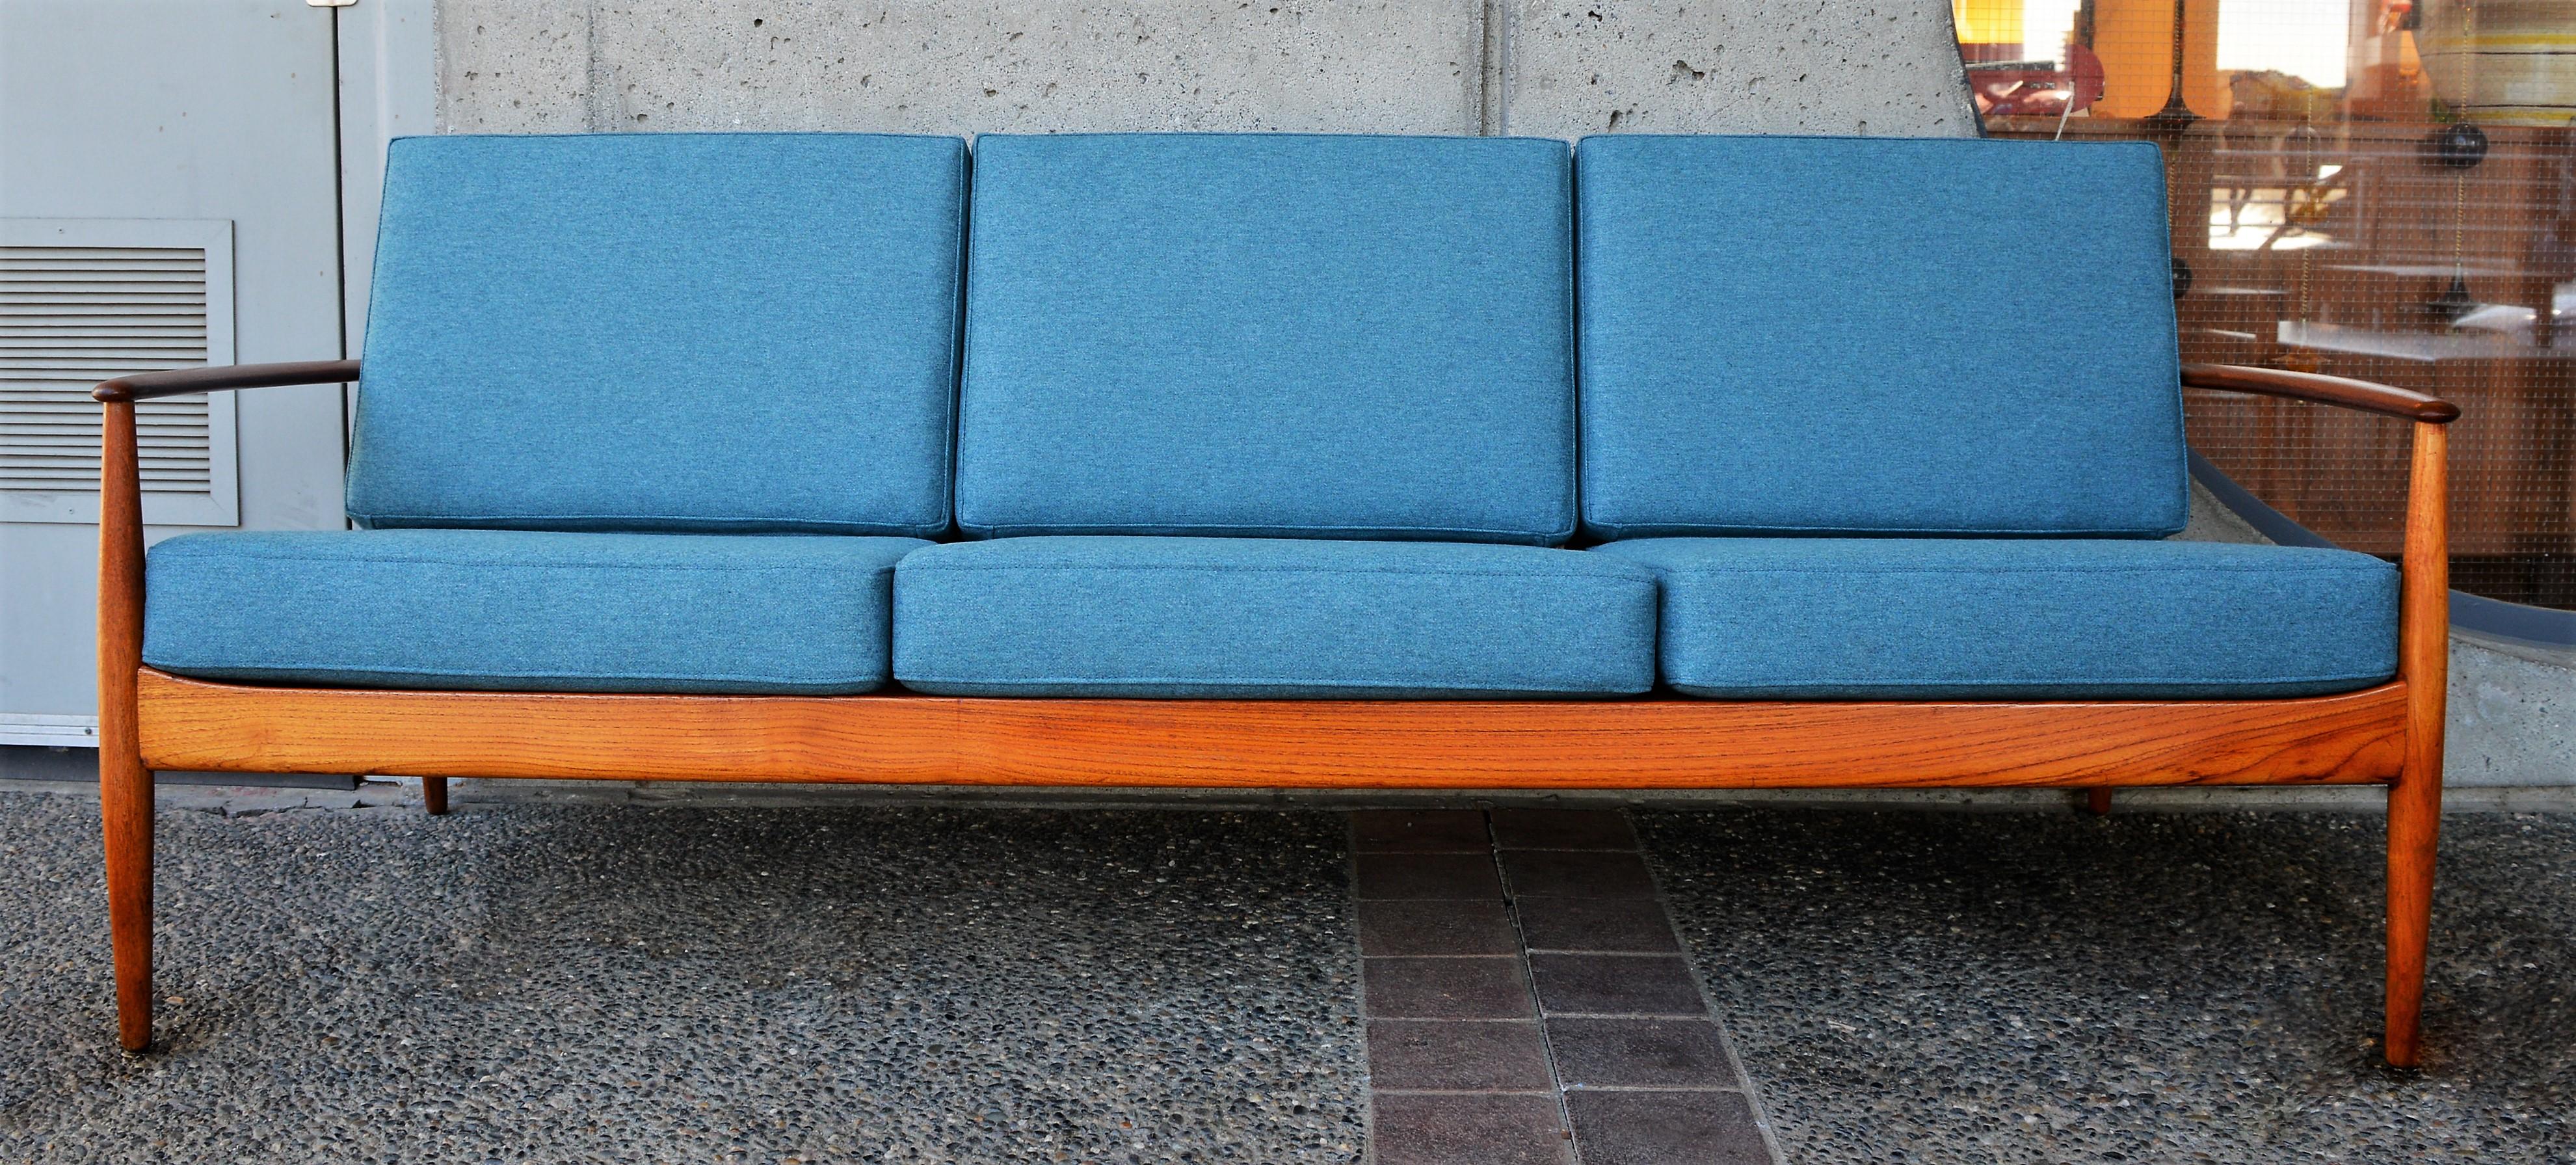 Upholstery Ultimate Grete Jalk Sofa, Restored, All Teak Frame, Thin Back Slats, 1960s For Sale